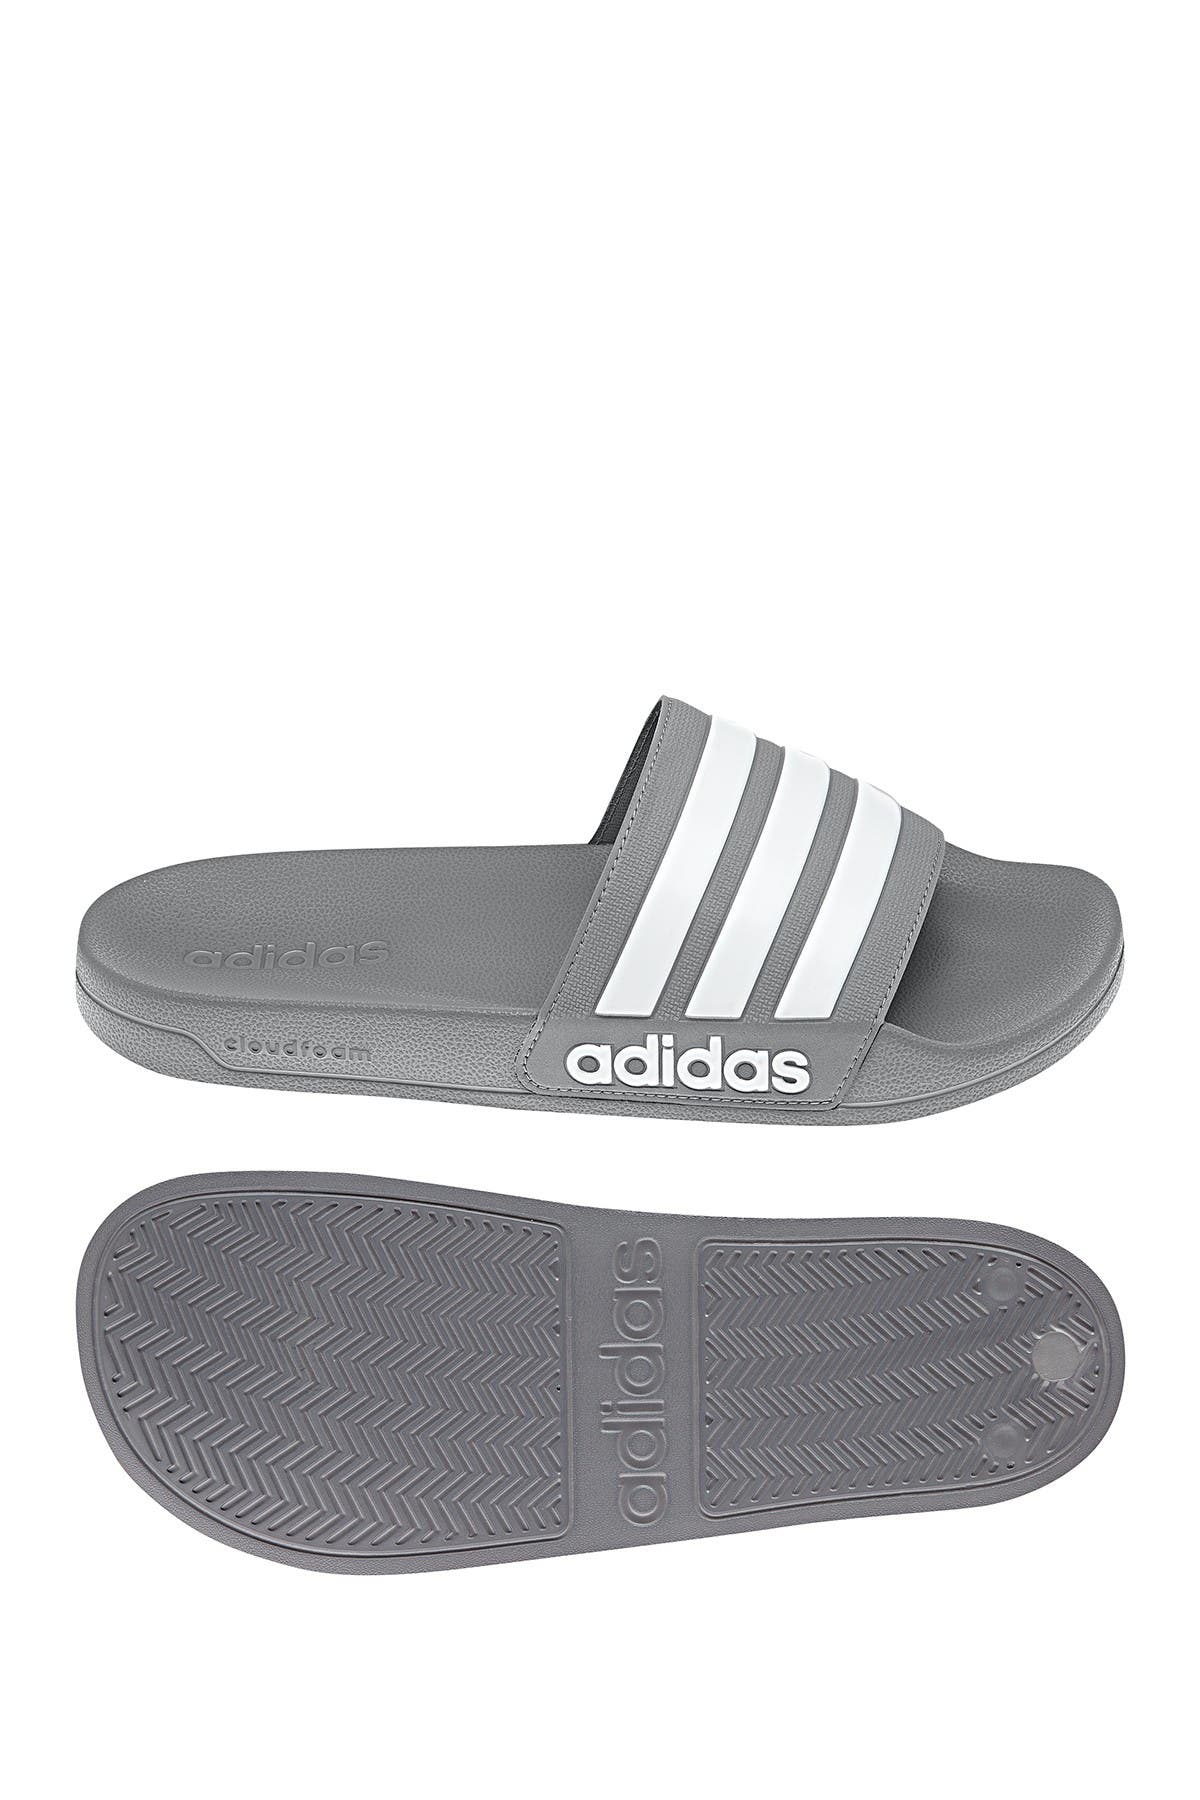 adidas slide on sandals